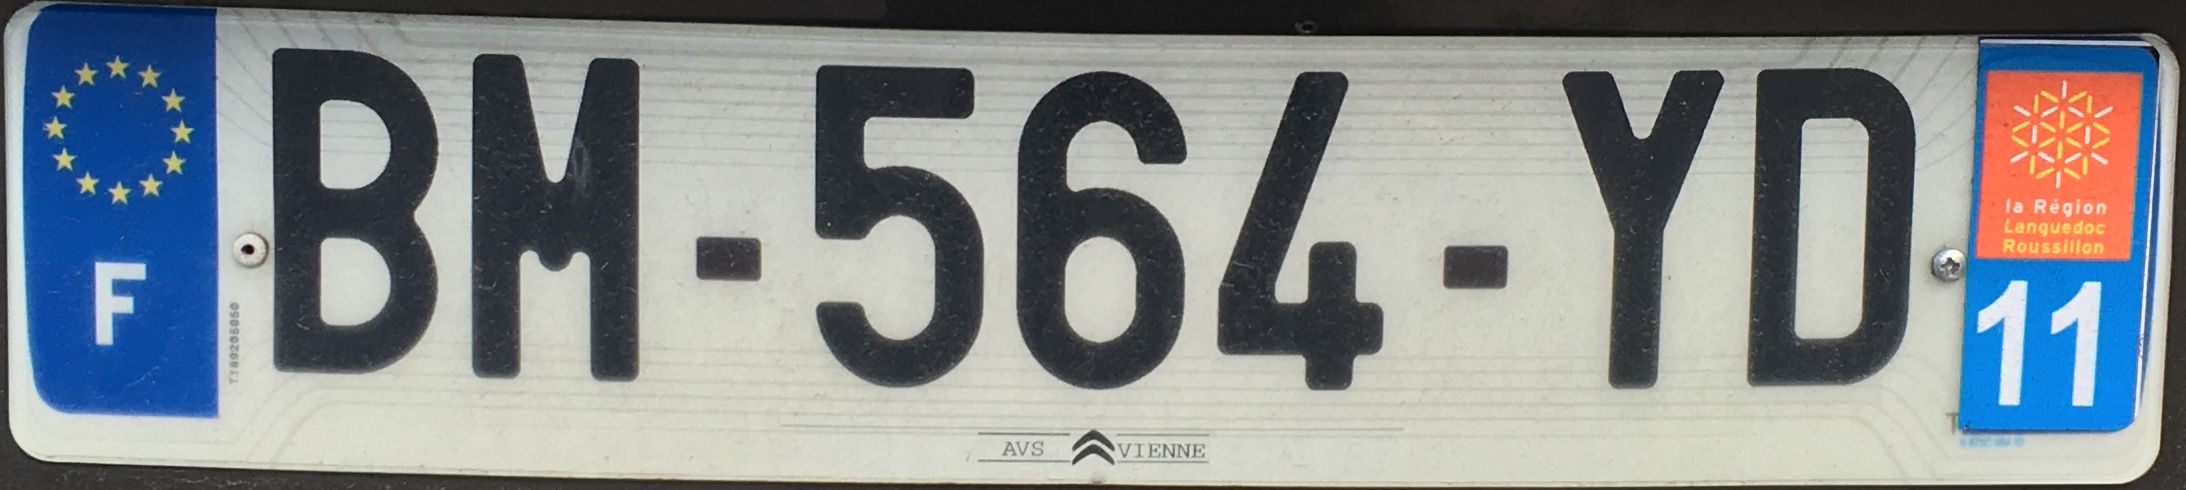 Francouzská registrační značka – 11 – Aude, foto: www.podalnici.cz